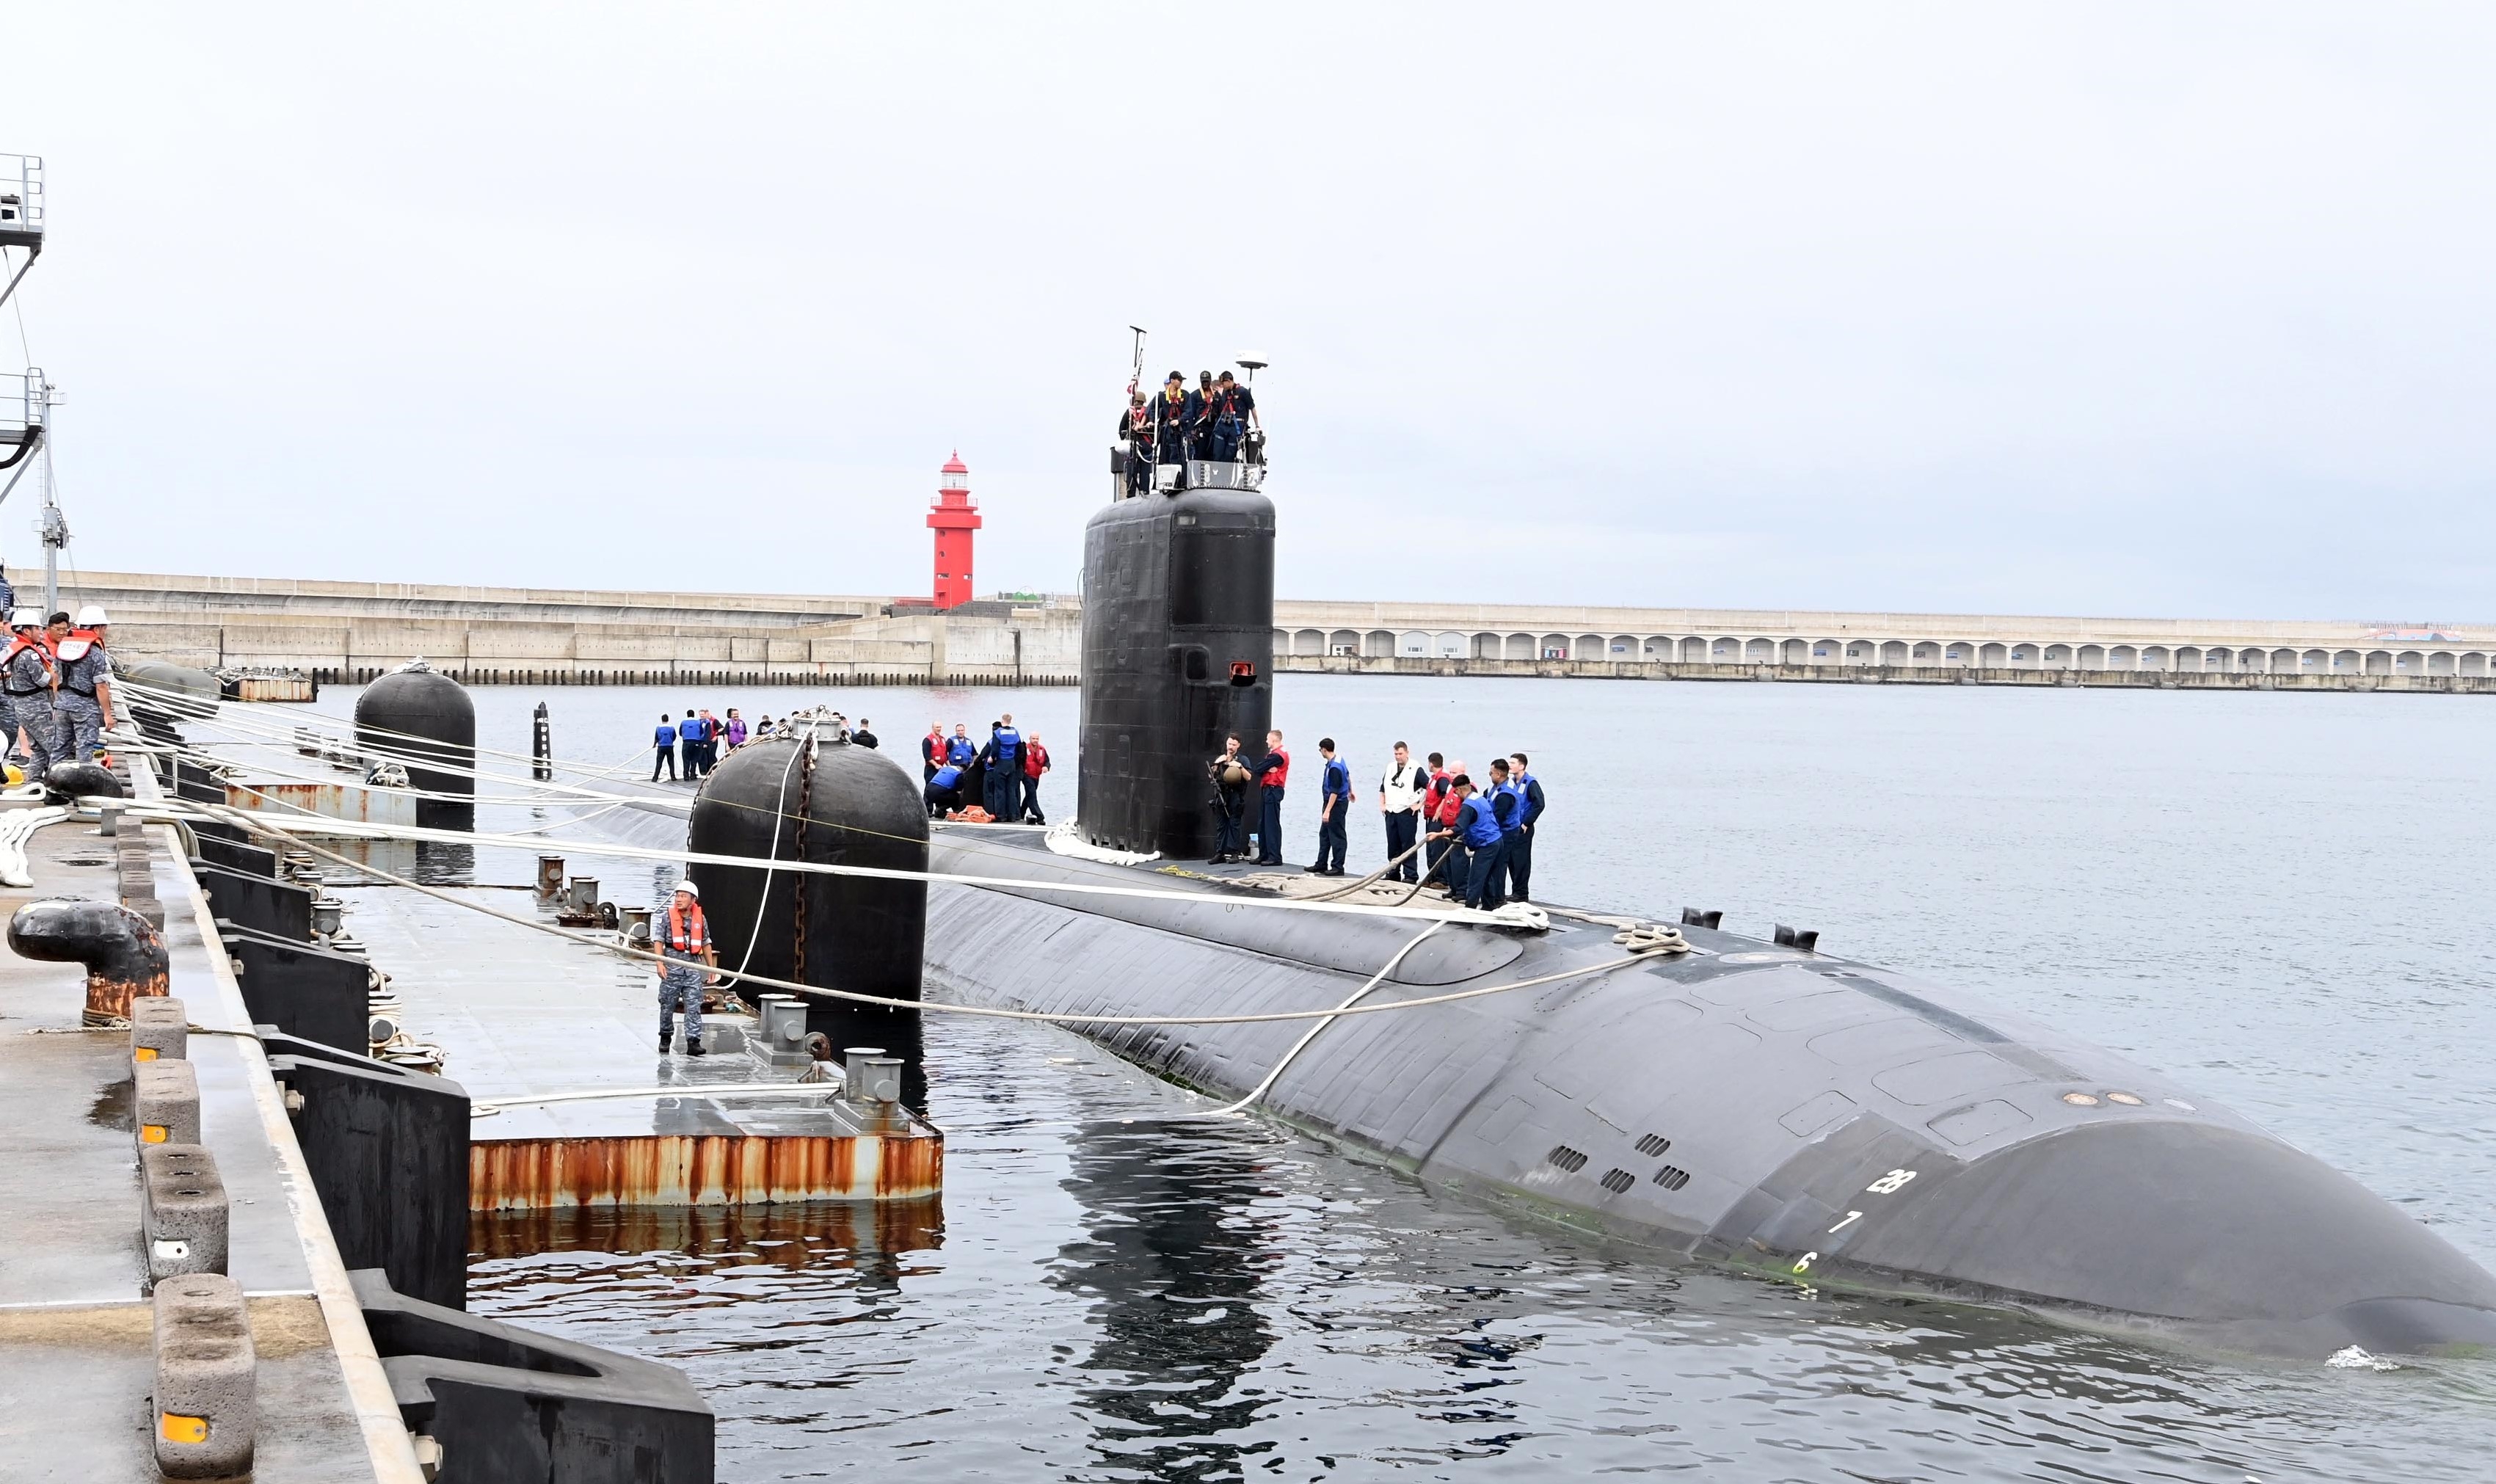 미국 LA급 핵추진잠수함(SSN) 아나폴리스함이 24일 오전 제주해군기지에 군수적재를 위해 입항하고 있다. 해군 제공